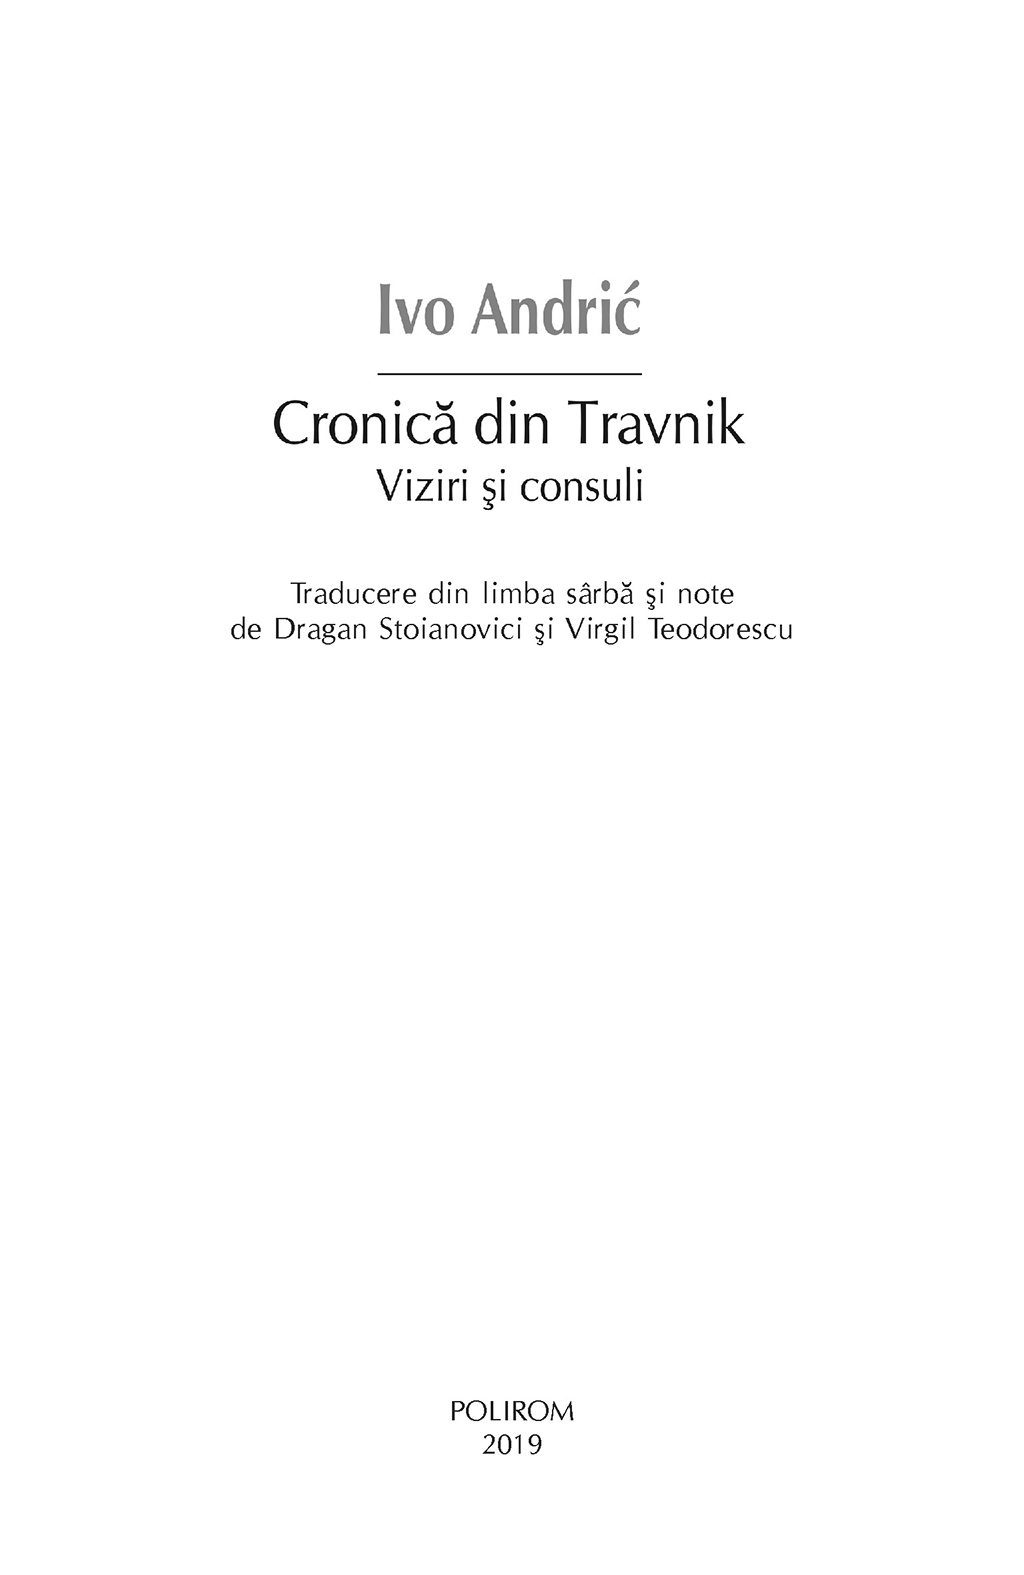 Cronica din Travnik | Ivo Andric - 2